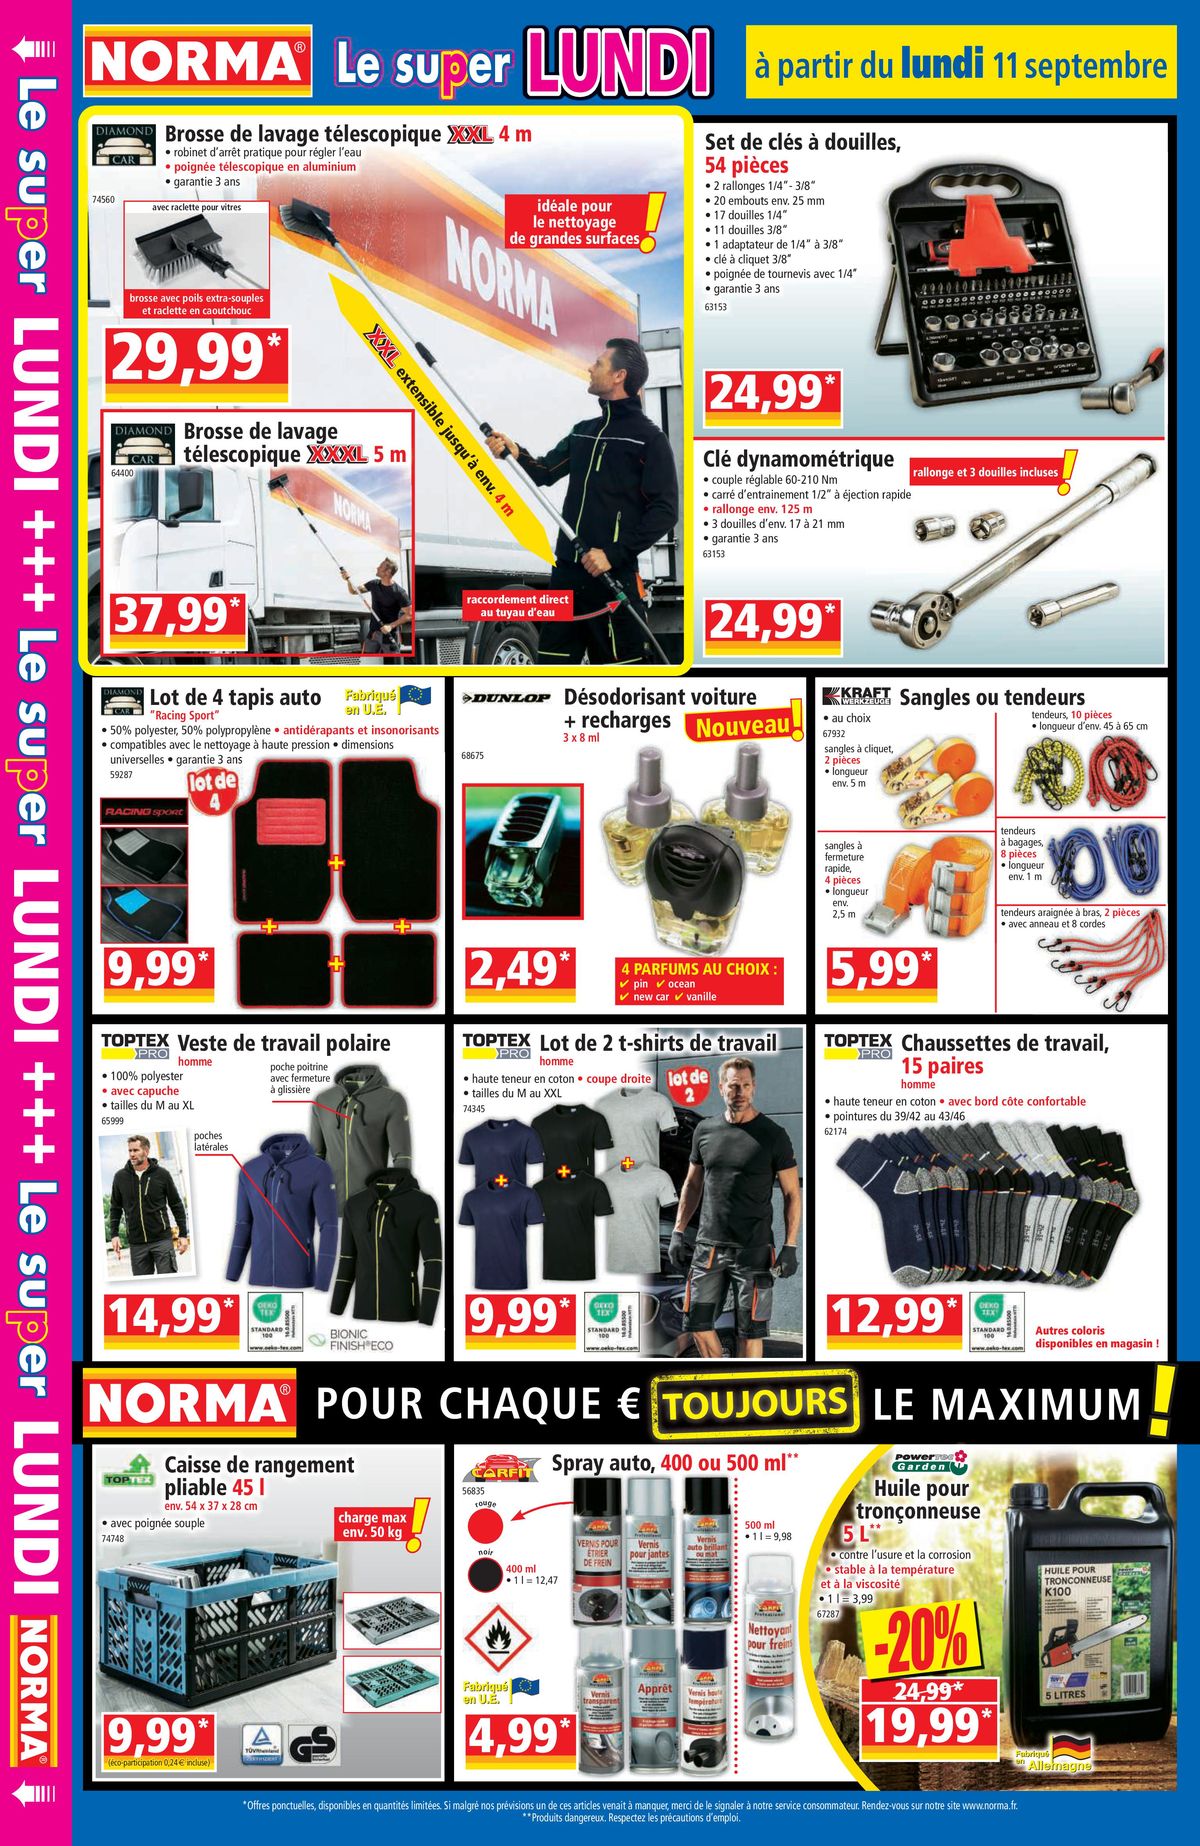 Catalogue Pour chaque €uro le maximum ., page 00012